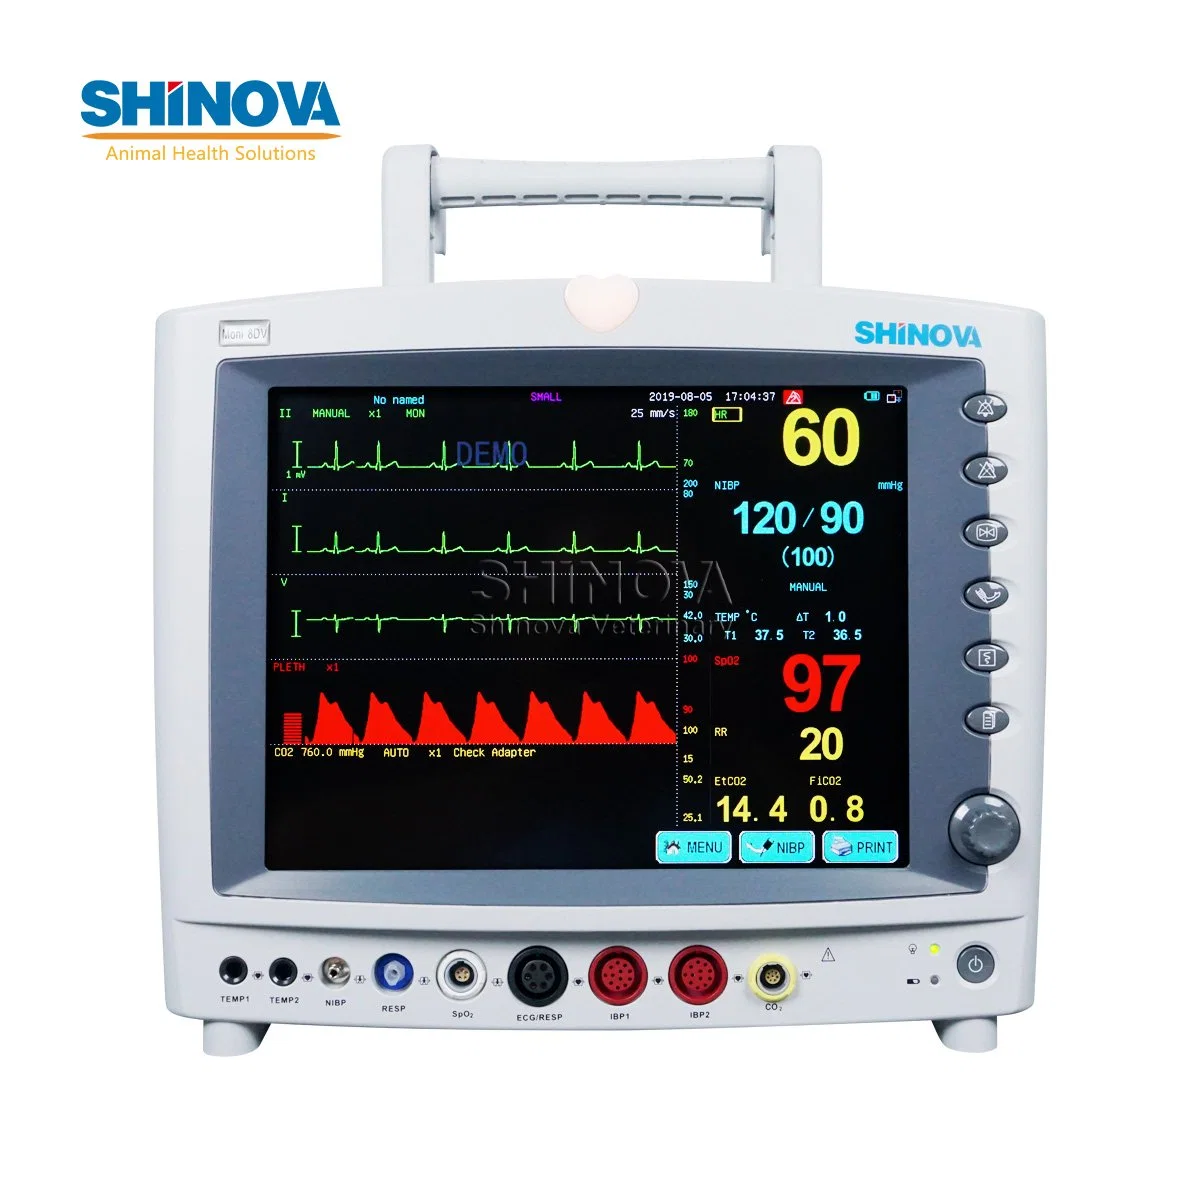 شاشة Shinova بشاشة لمس بقياس 12.1 بوصة ذات معلمات متعددة مع etCO2 لـ استخدام المستشفى البيطري